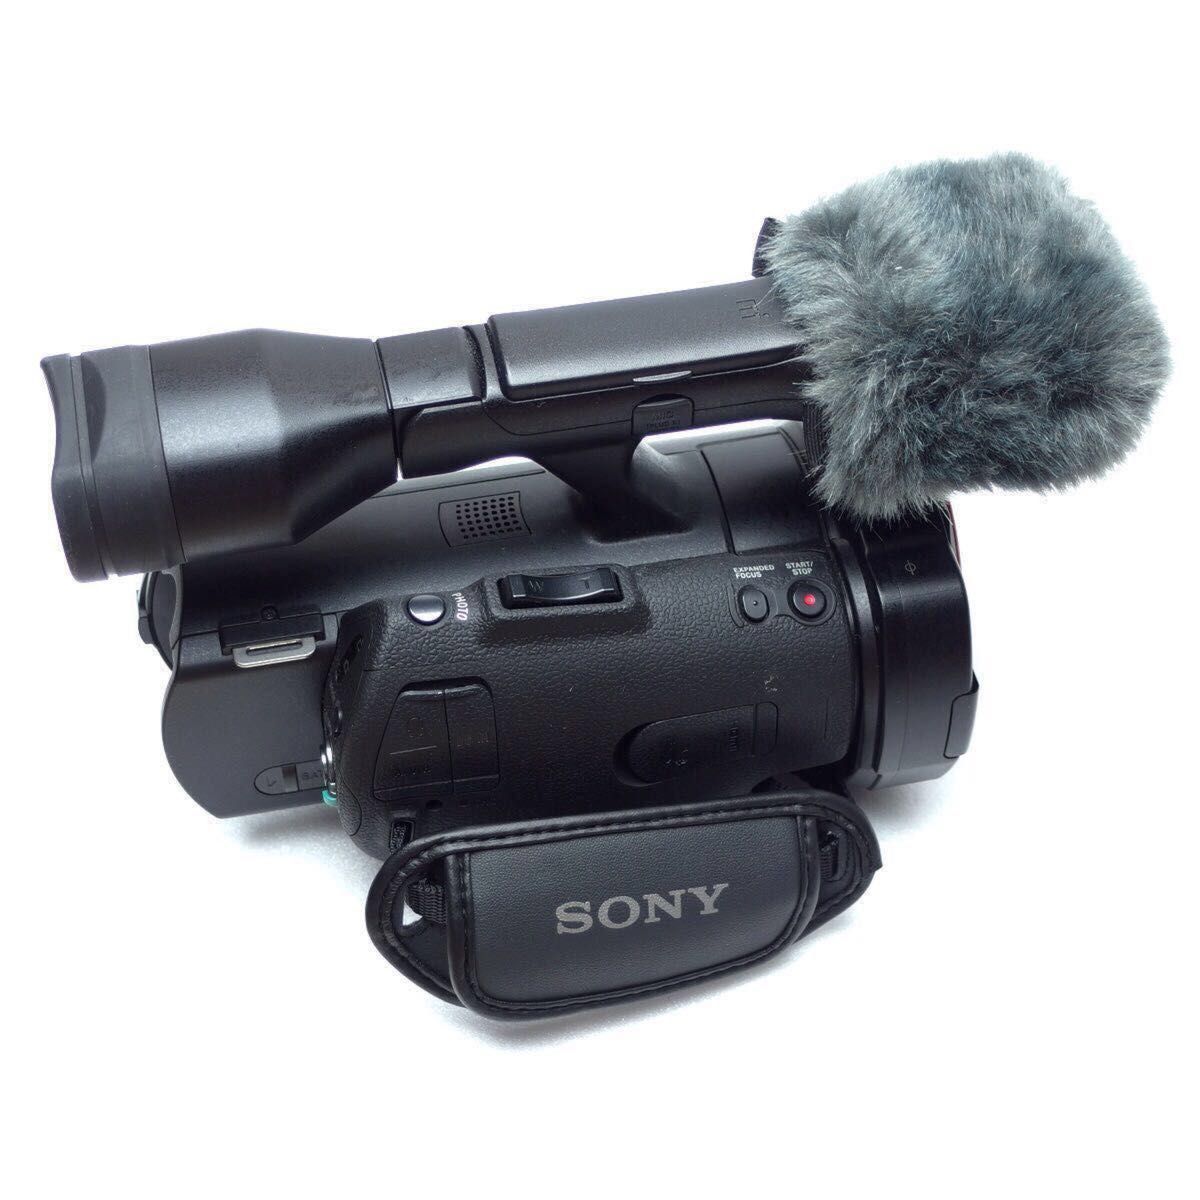 期間限定価格 SONY NEX-VG900 Eマウント ビデオカメラ 豪華オマケ付